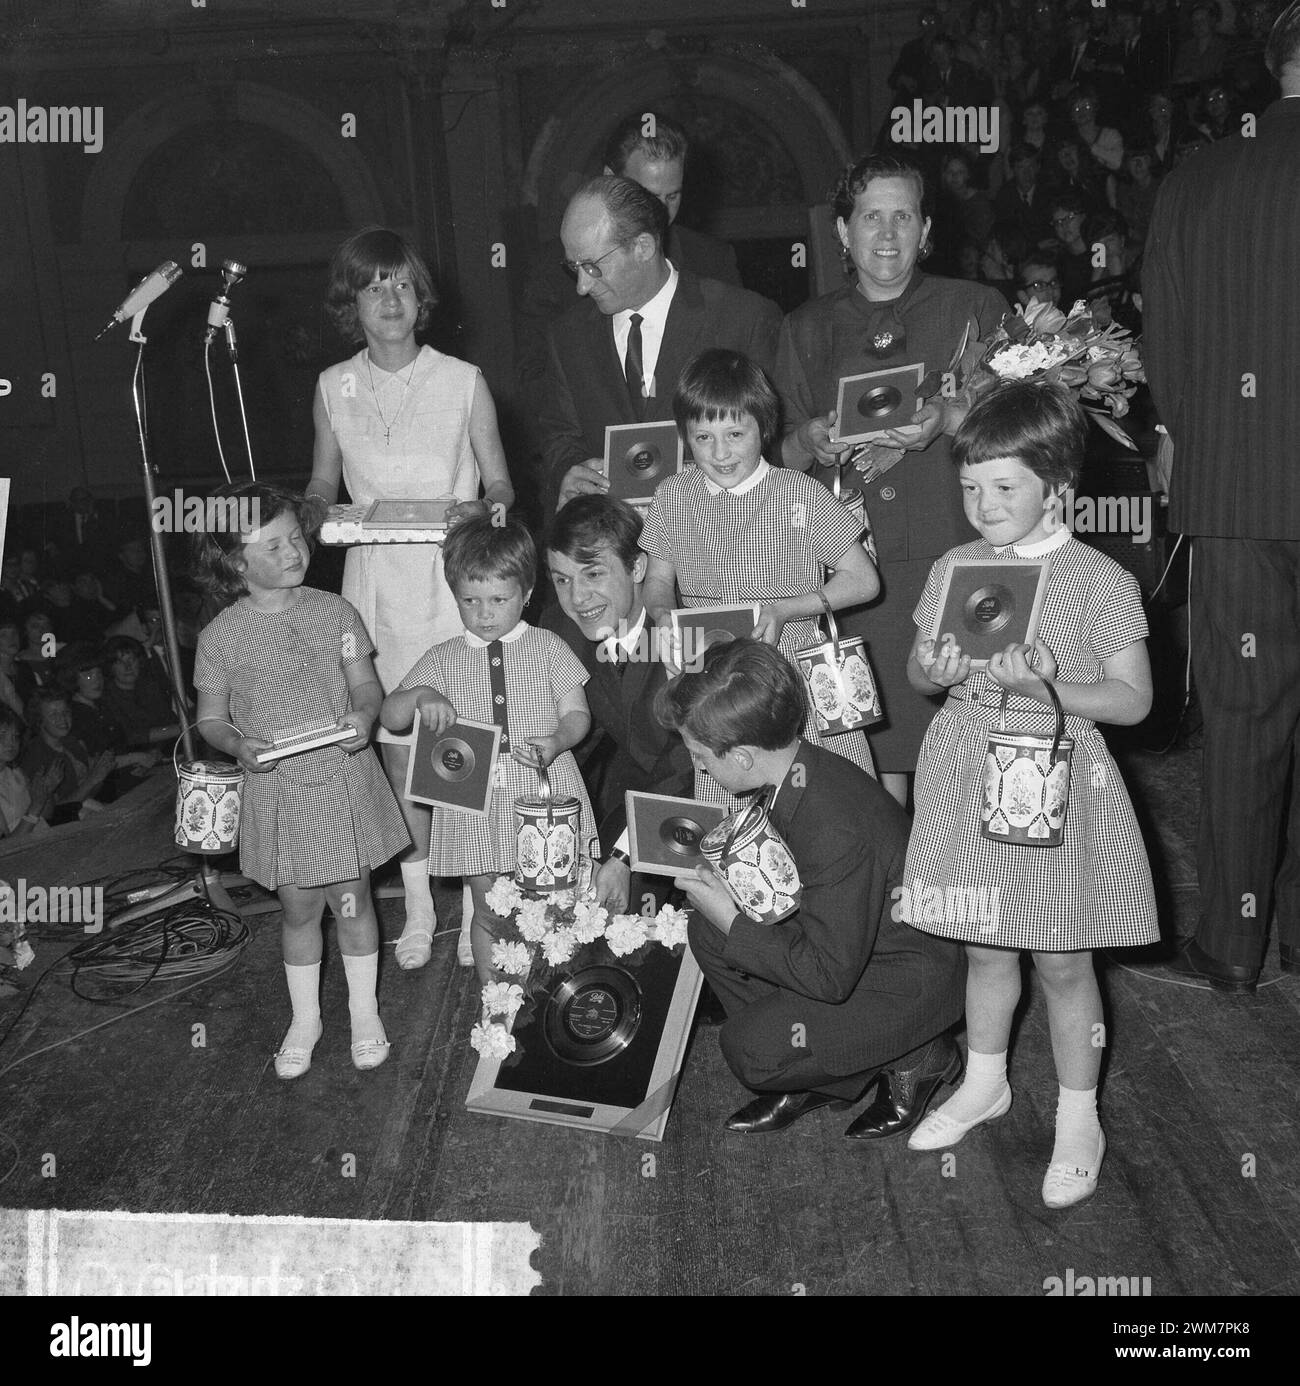 15 maggio 1964. Amsterdam, Paesi Bassi. La cantante belga Adamo ha presentato un disco d'oro alla sala concerti Concertgebouw di Amsterdam. Foto Stock